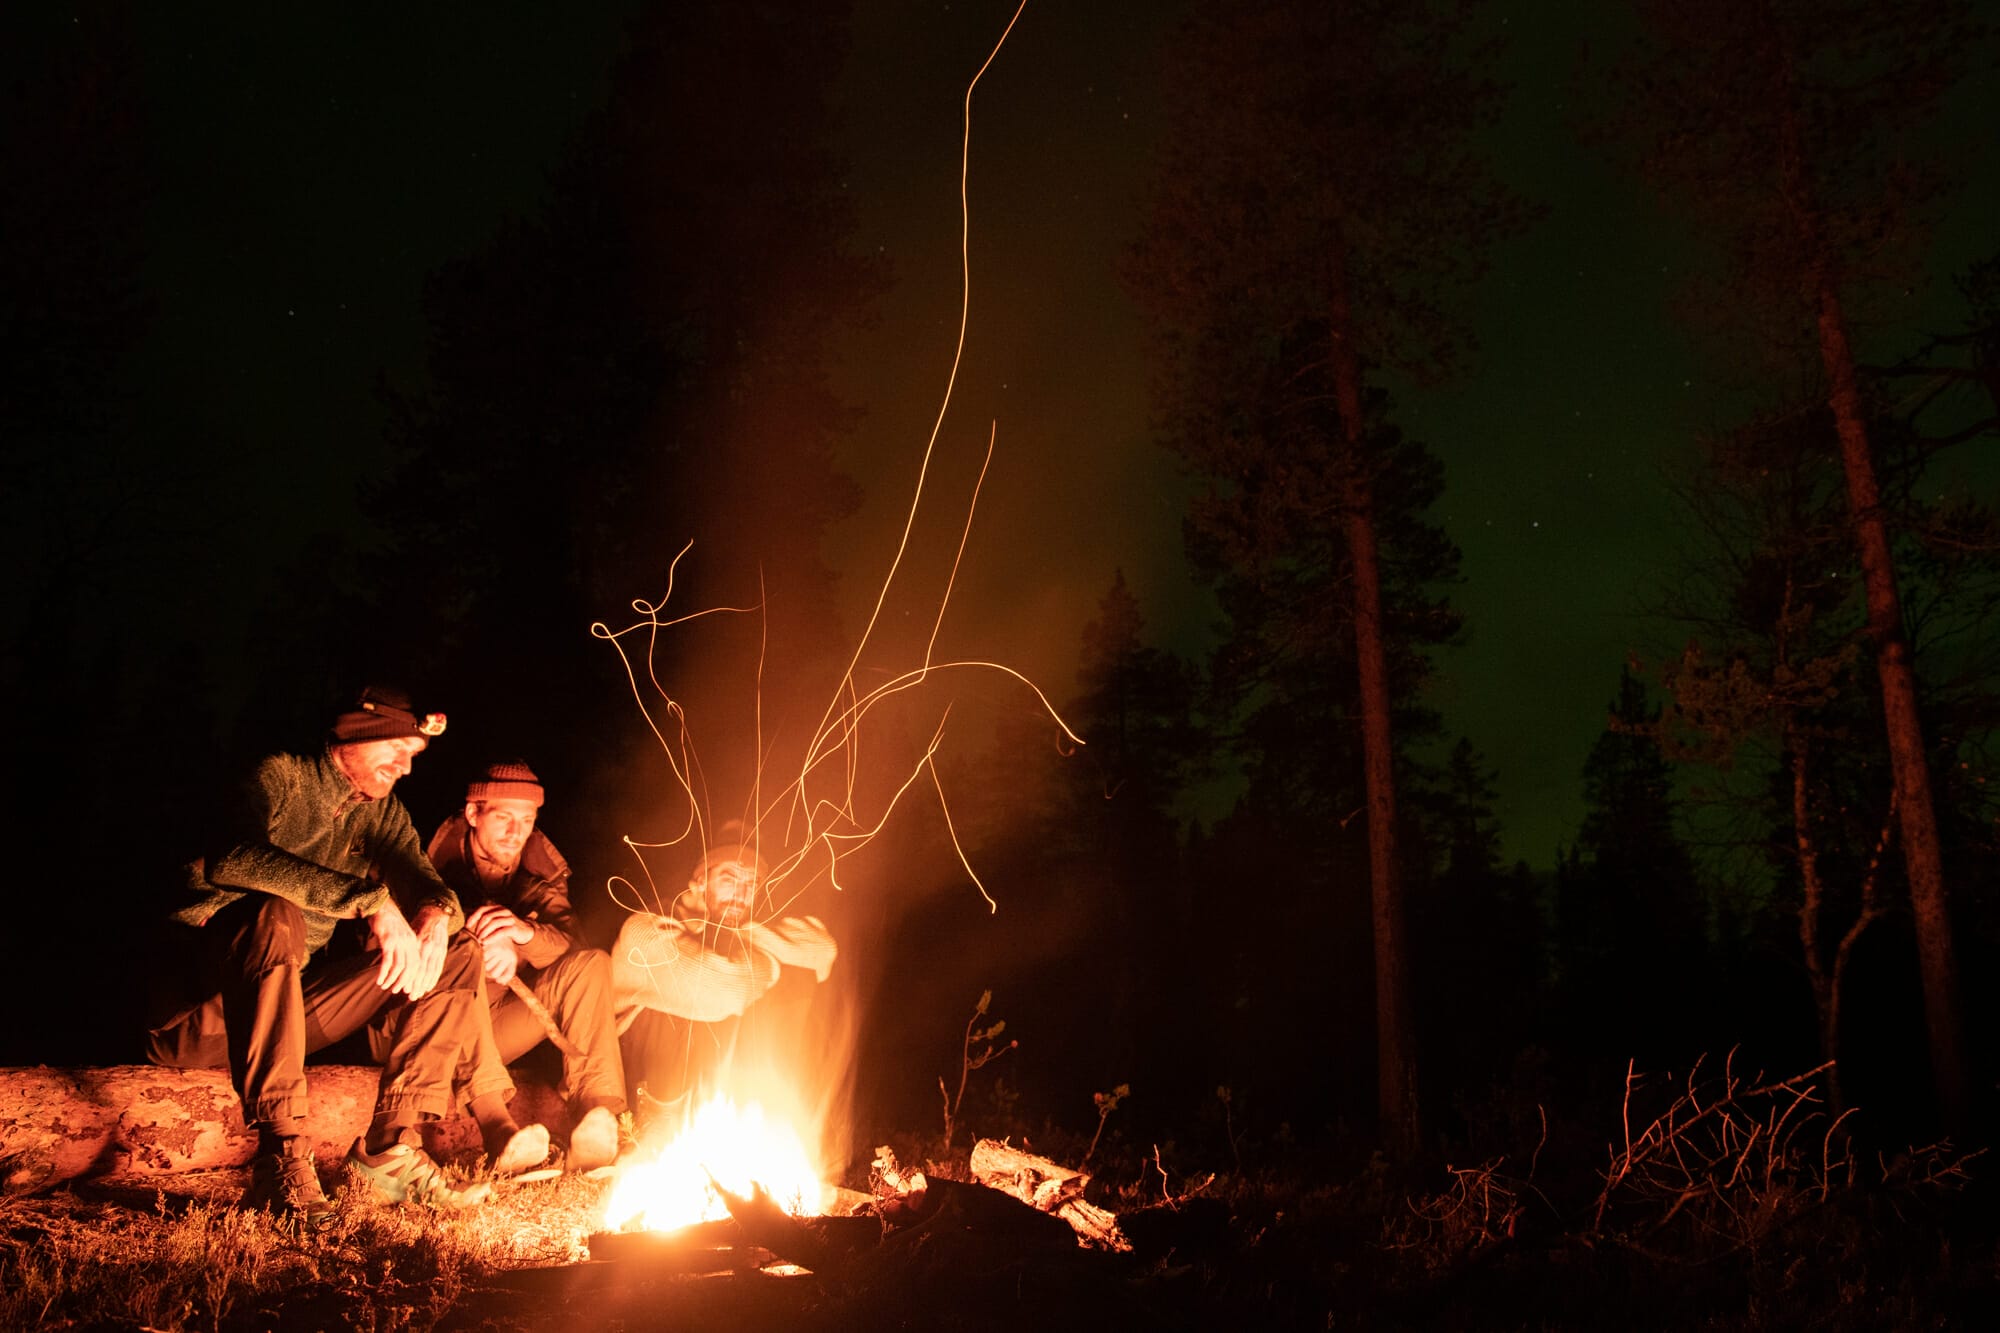 bivouac sous les aurores boréales en Laponie finlandaise